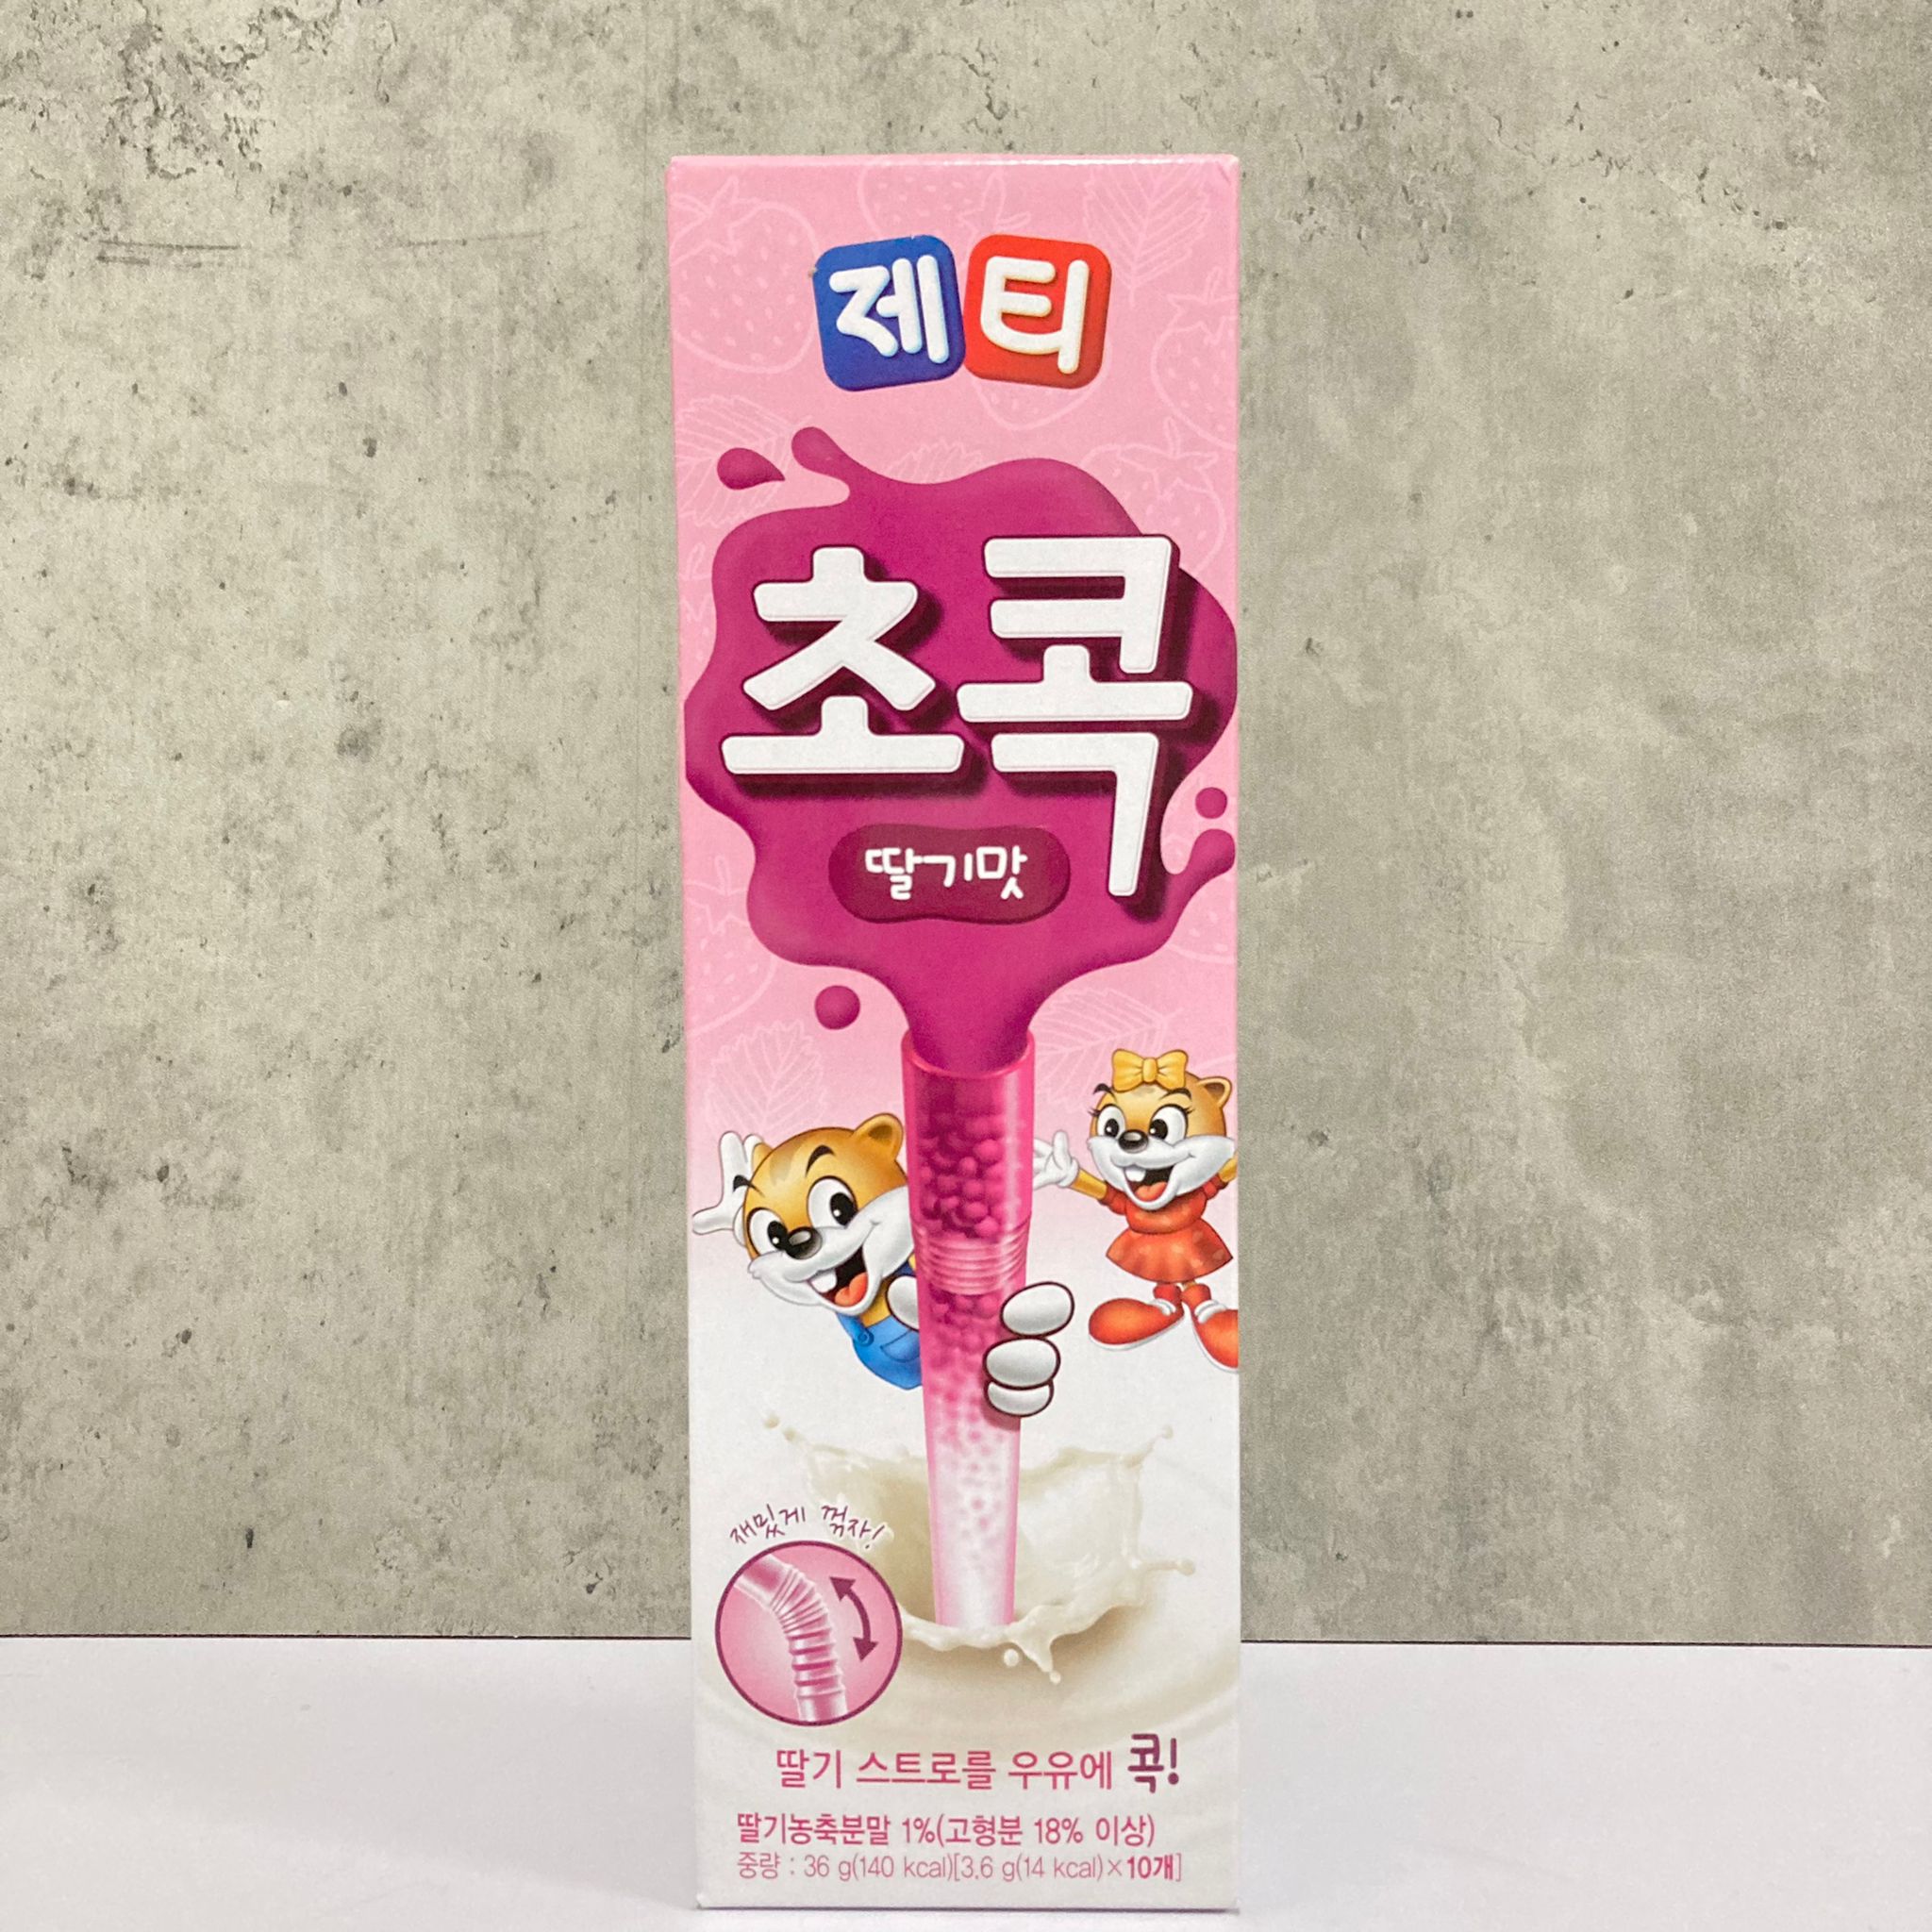 韓國食品-[동서] 제티 (딸기맛) 36g